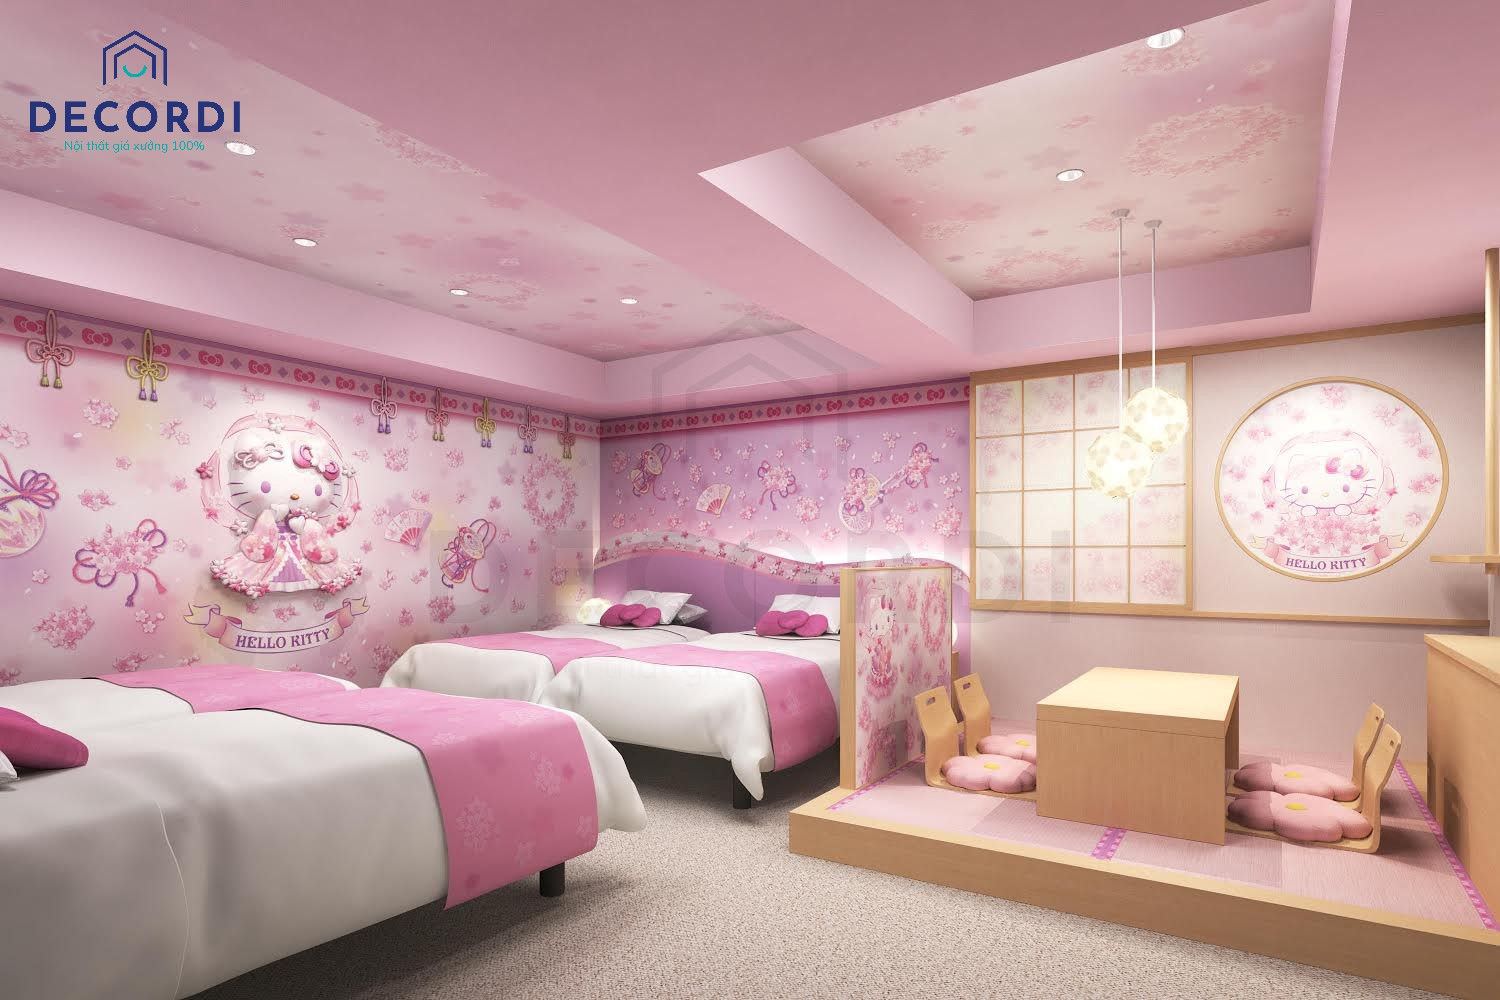 Giấy dán tường hello kitty 3D độc đáo trang trí phòng ngủ theo phong cách Nhật